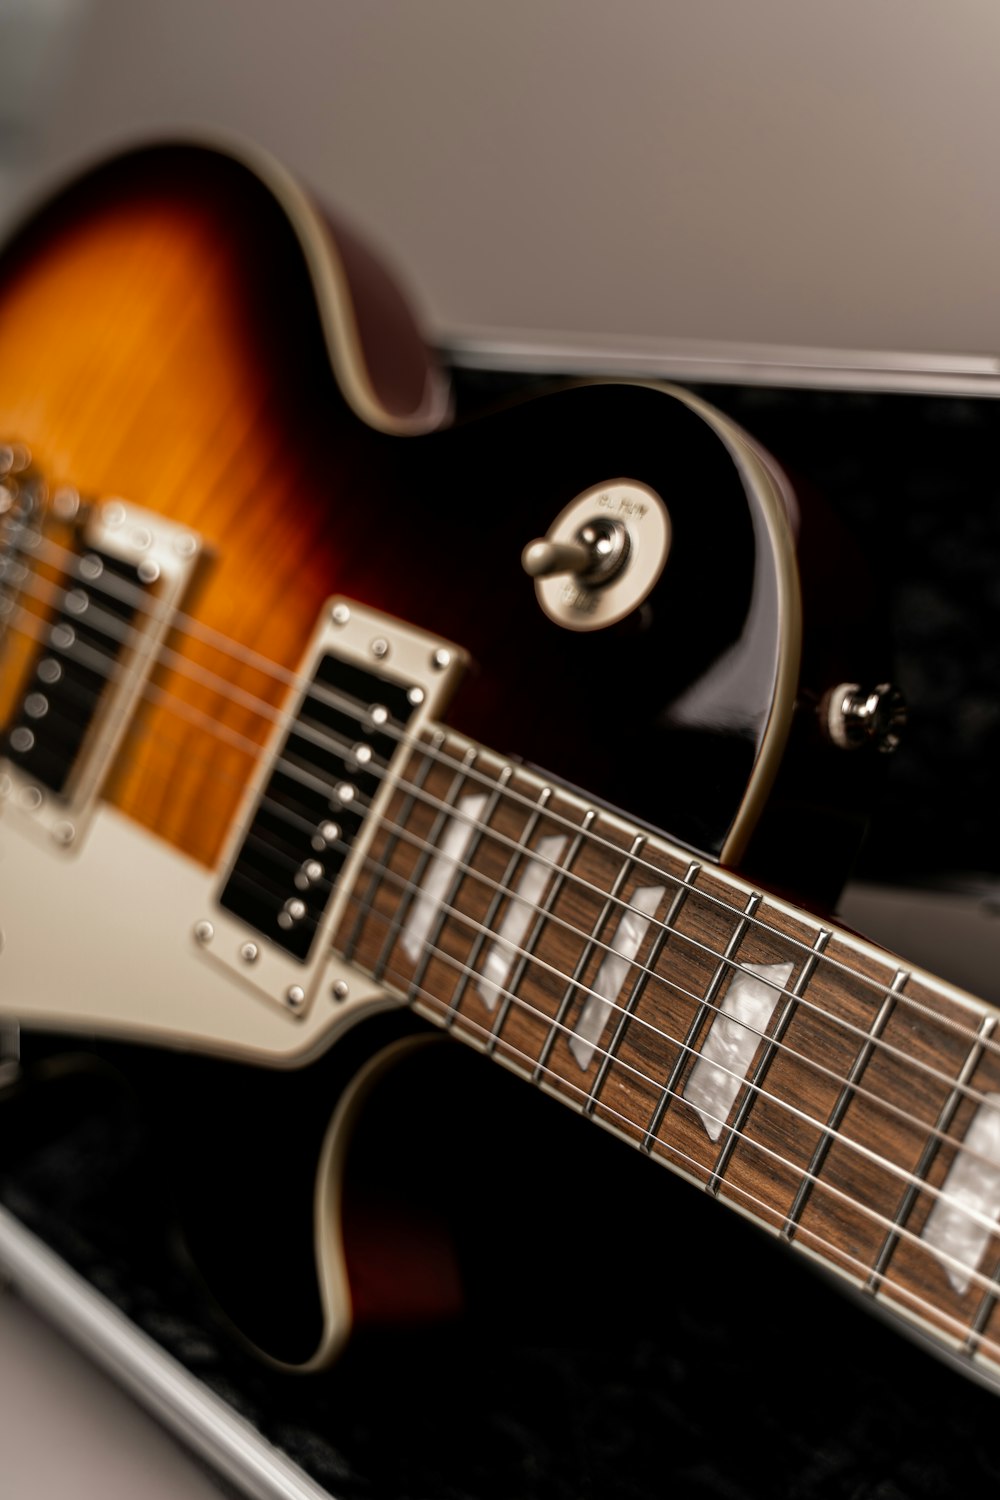 chitarra elettrica bianca e marrone